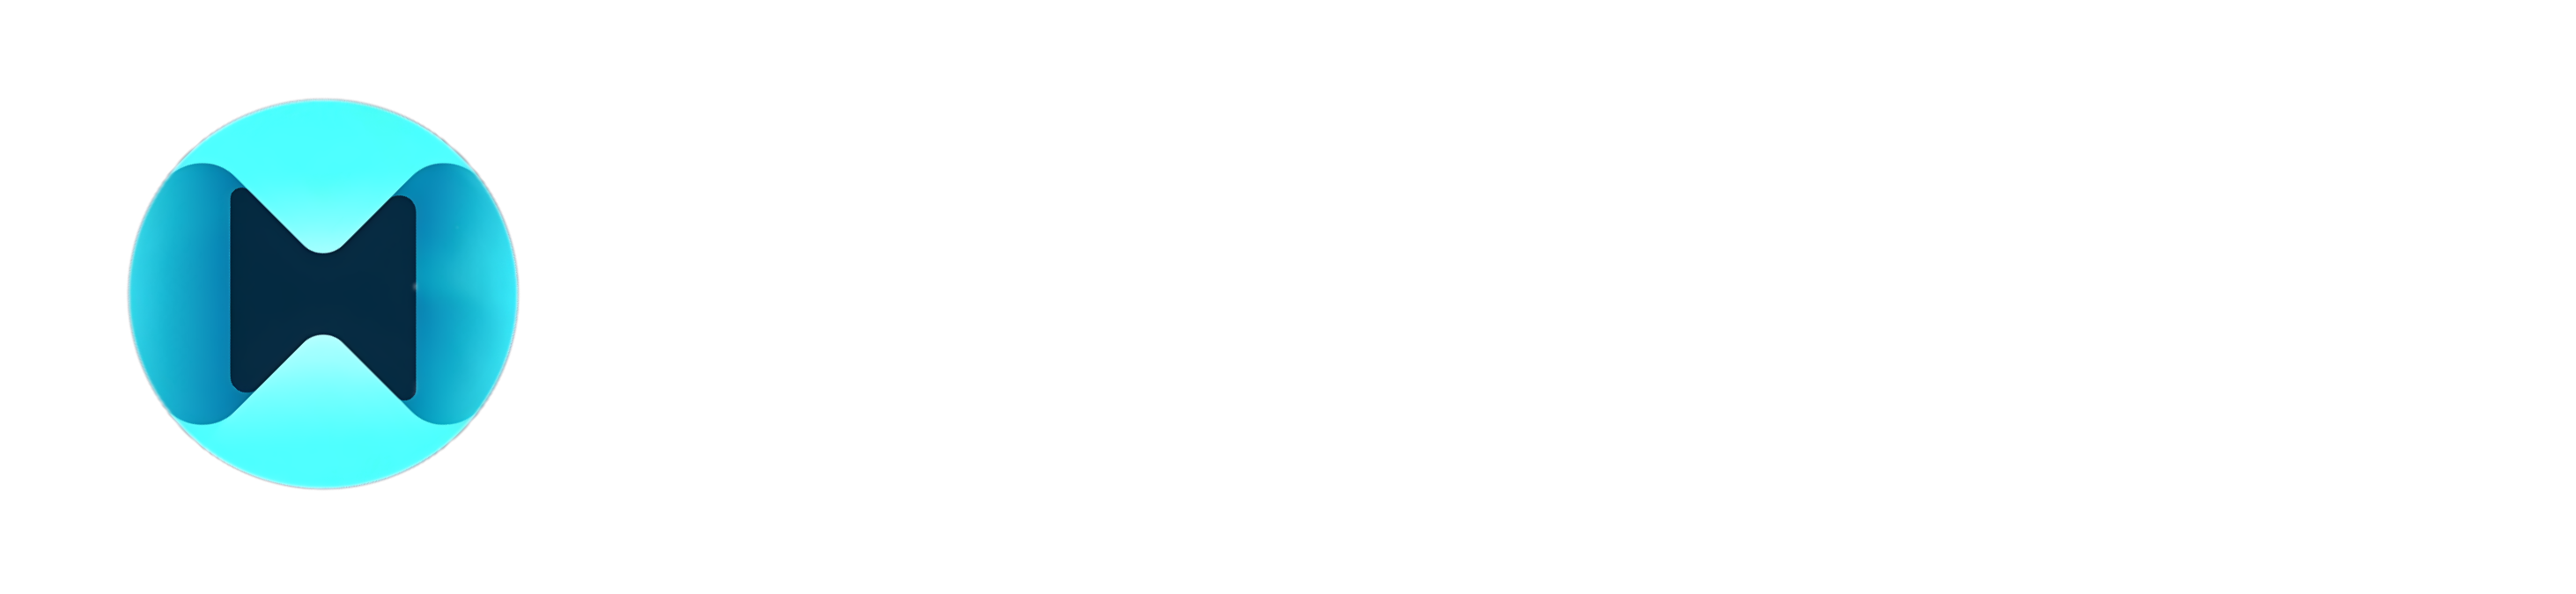 Metaoracle